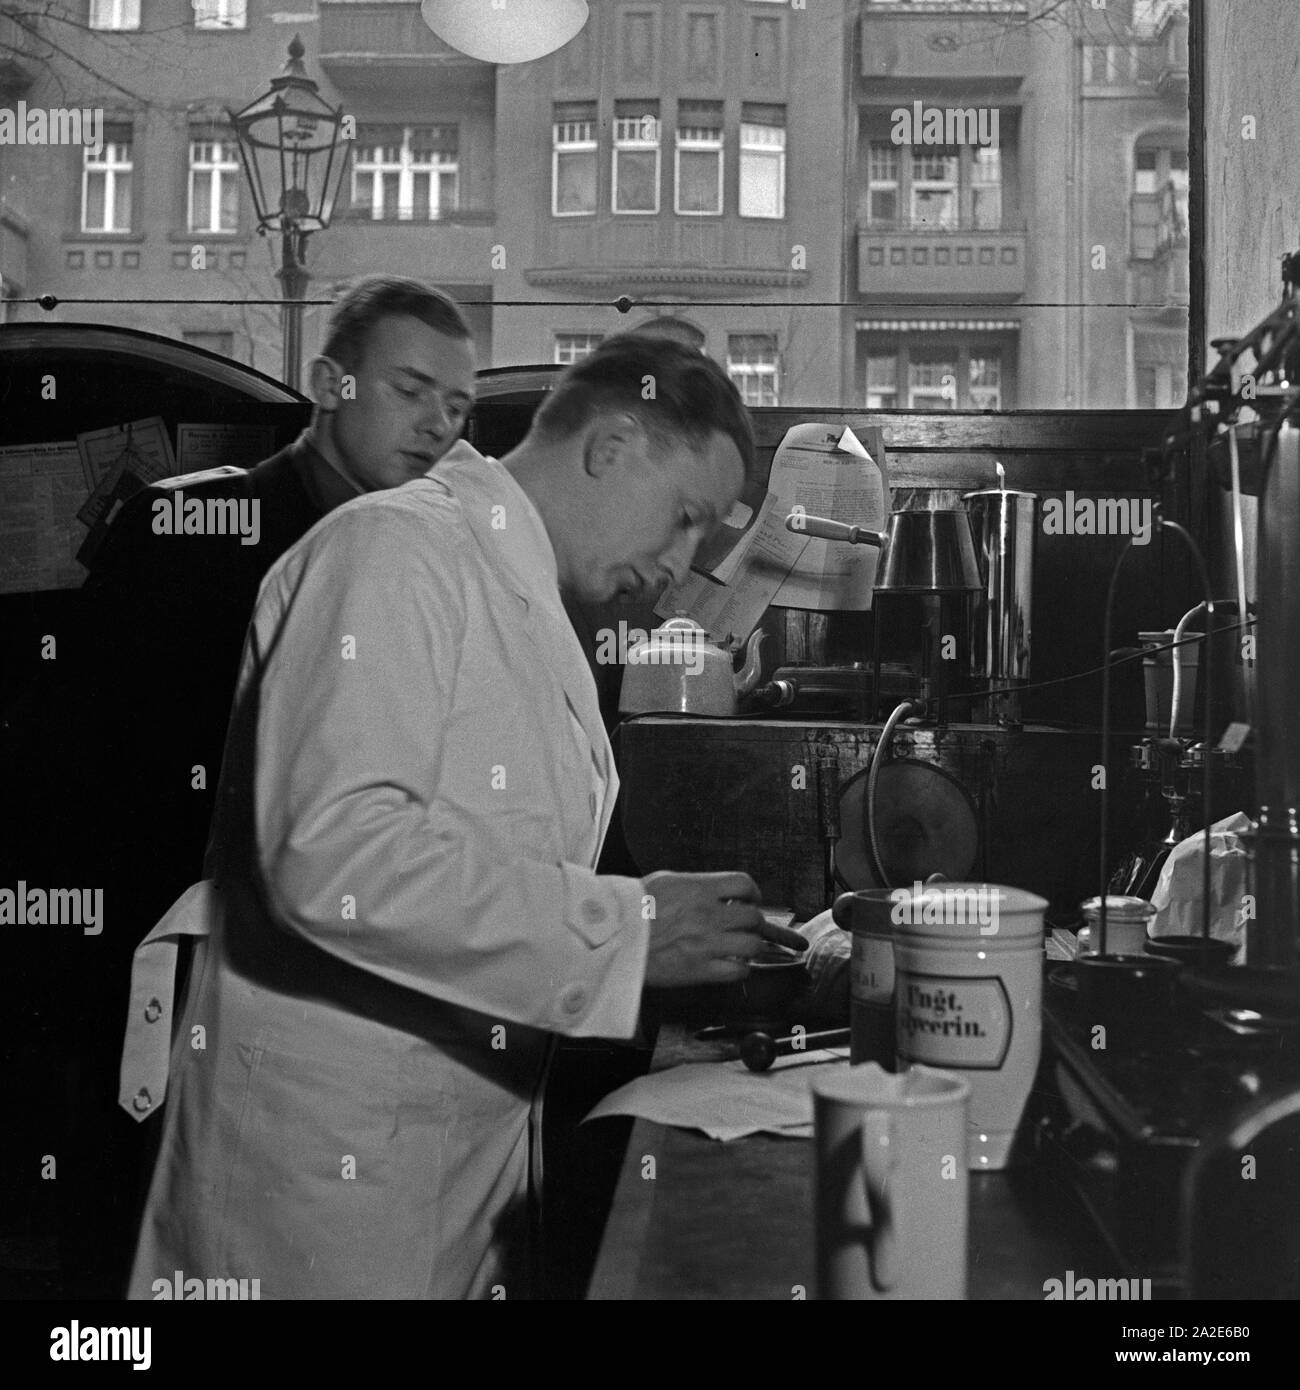 Ein Apothekerlehrling stellt unter Aufsicht ein Medikament zusammen, Deutschland 1930er Jahre. A pharmacy trainee is watched by mixing and producing medicine, Germany 1930s. Stock Photo